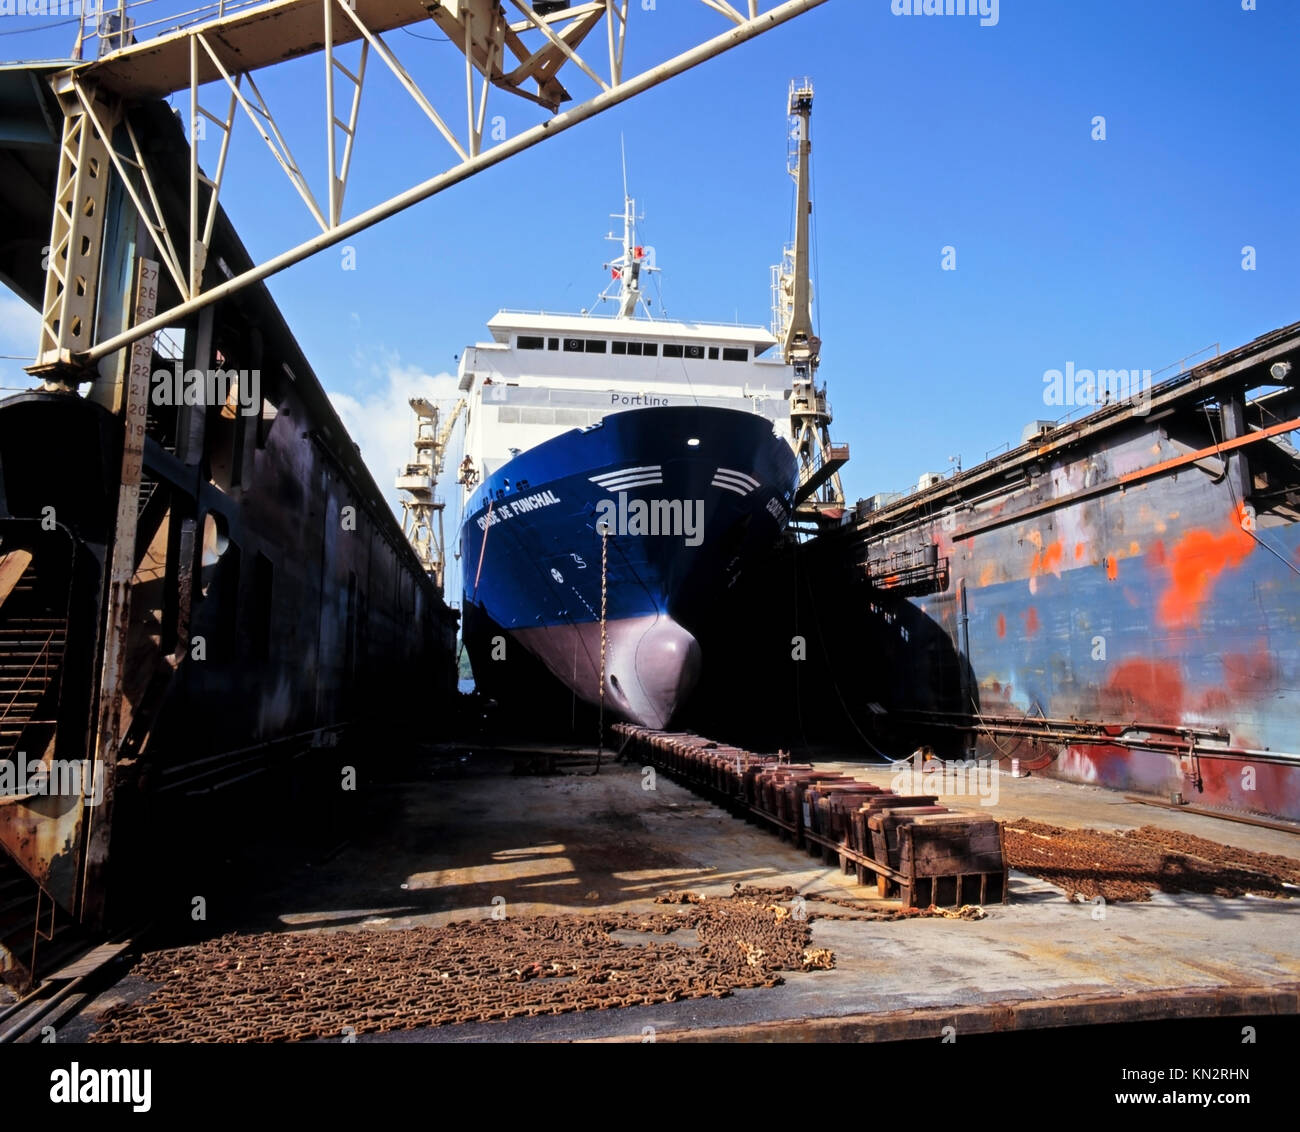 Drydock, Docks, Industry & Technology Stock Photo